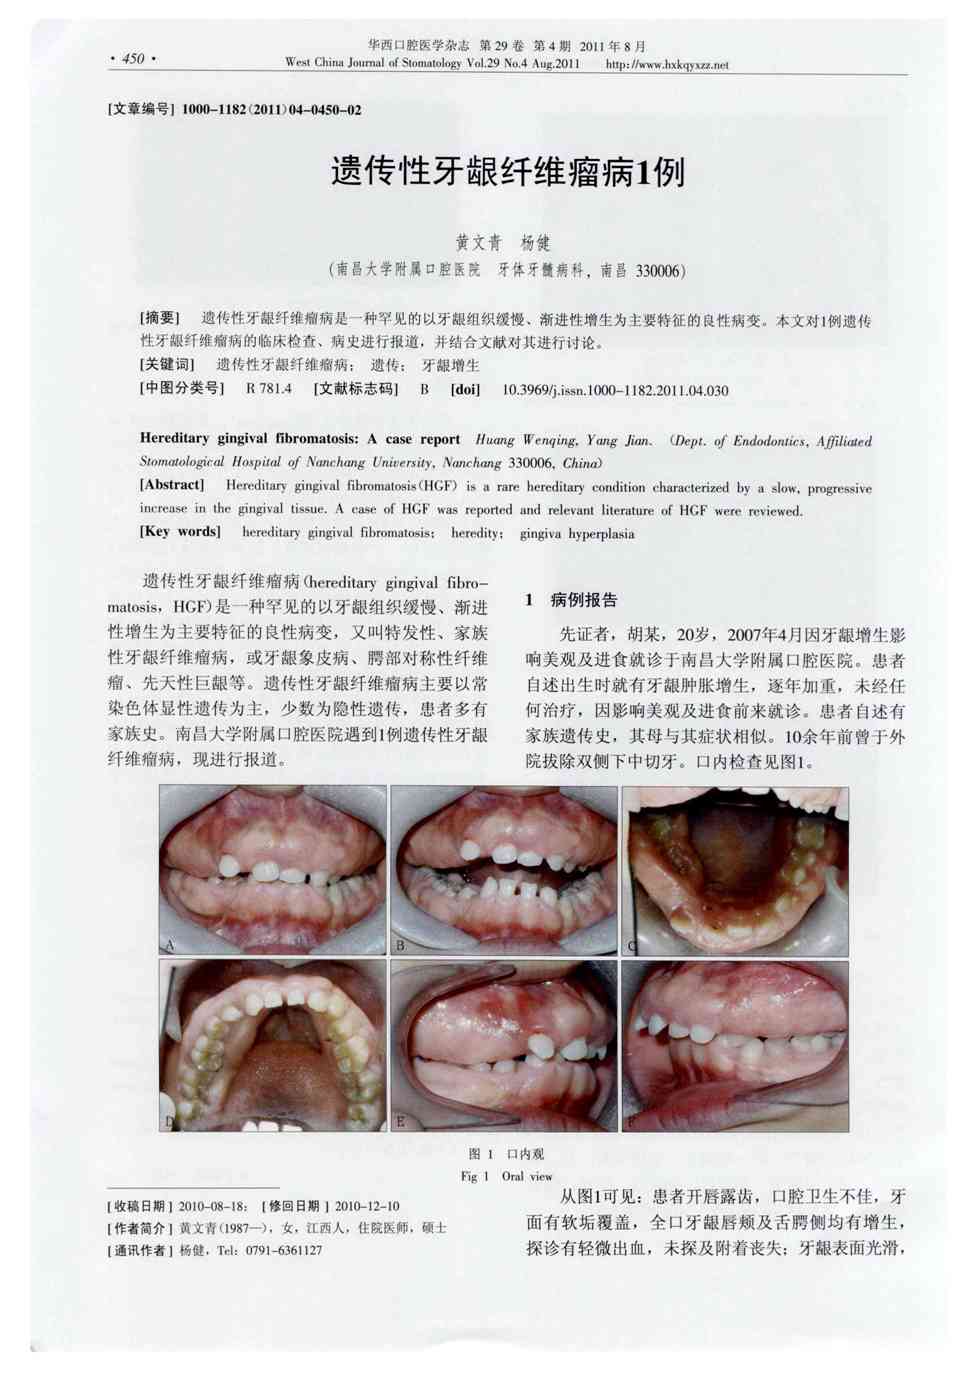 4    遗传性牙龈纤维瘤病是一种罕见的以牙龈组织缓慢,渐进性增生为